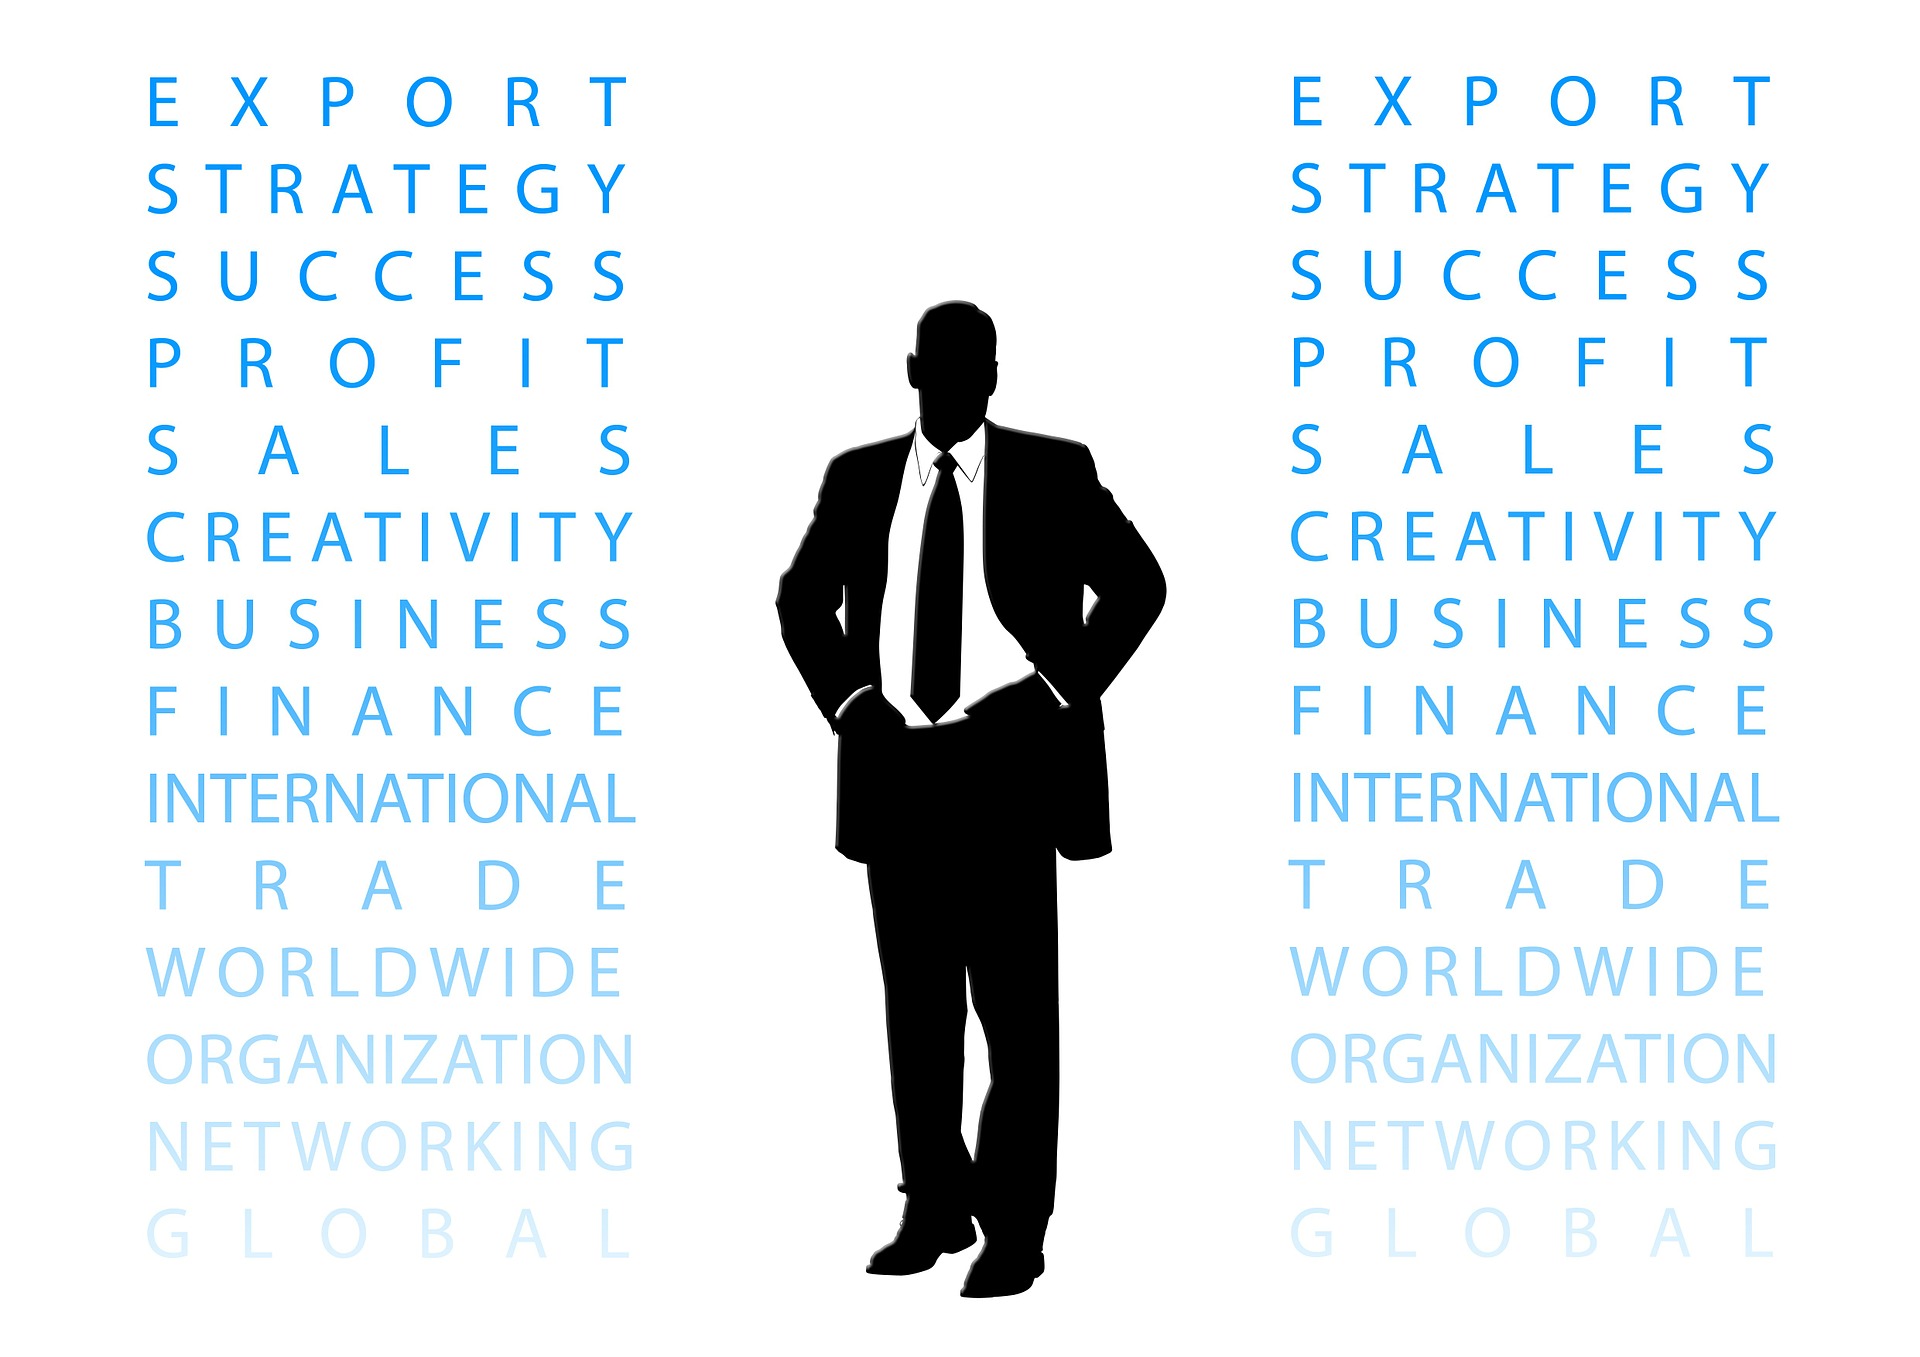 A exportação pode ser uma estratégia mais efetiva comparada às alternativas de gestão tradicionais